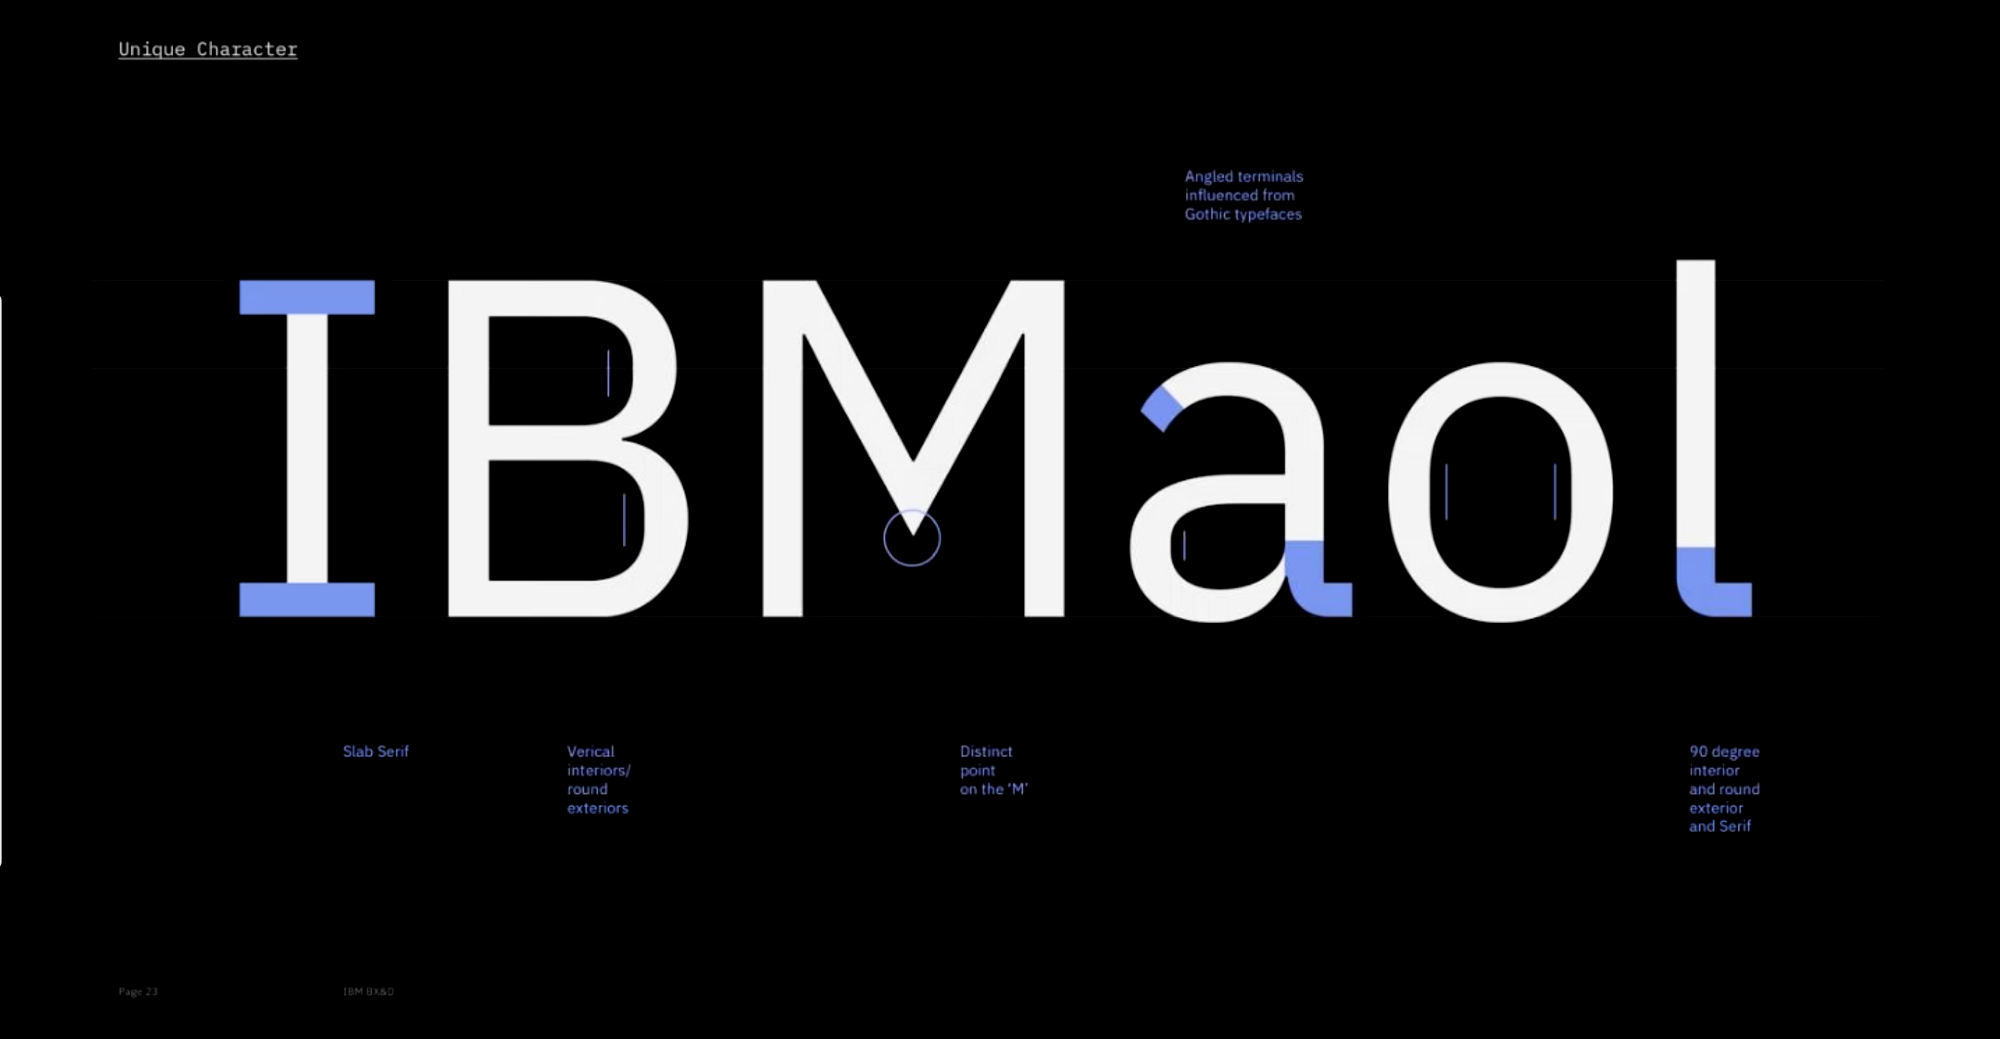 Ibm sans. IBM шрифт. IBM Plex mono шрифты кириллица. Фирменный комплект шрифтов. IBM Plex Serif.